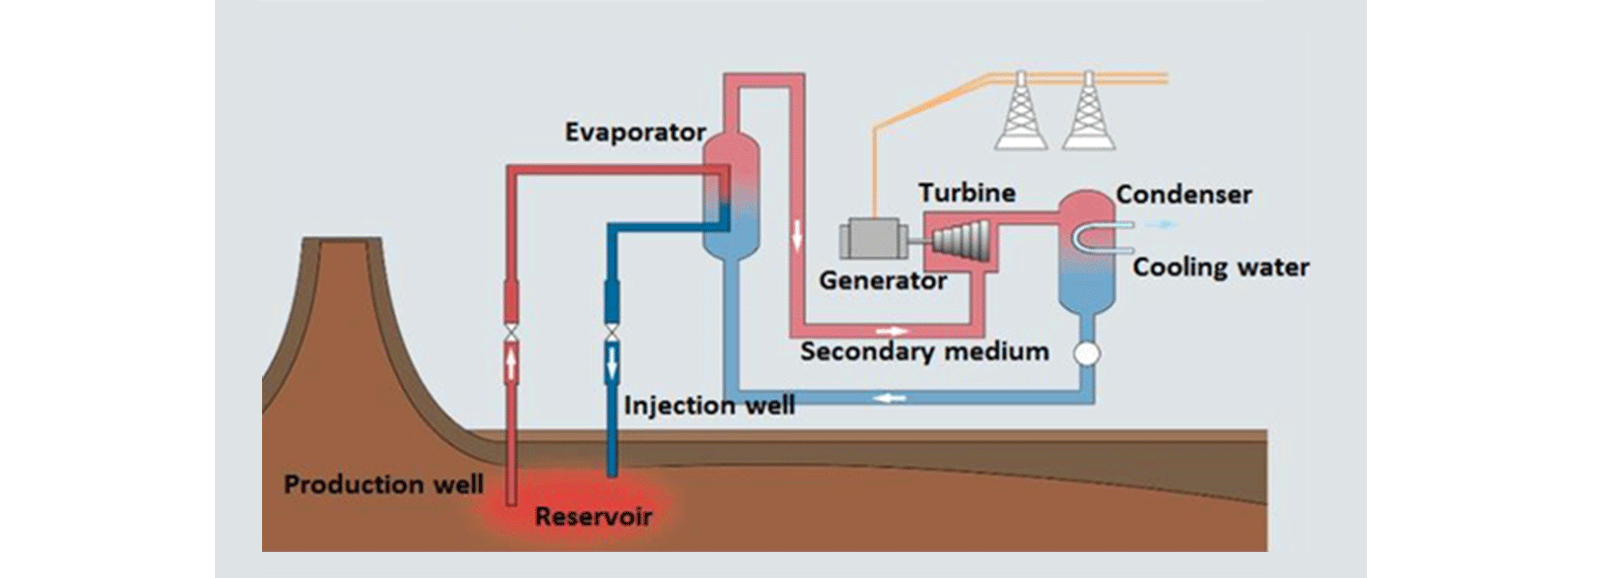 схема системы бинарного цикла геотермальной электростанции